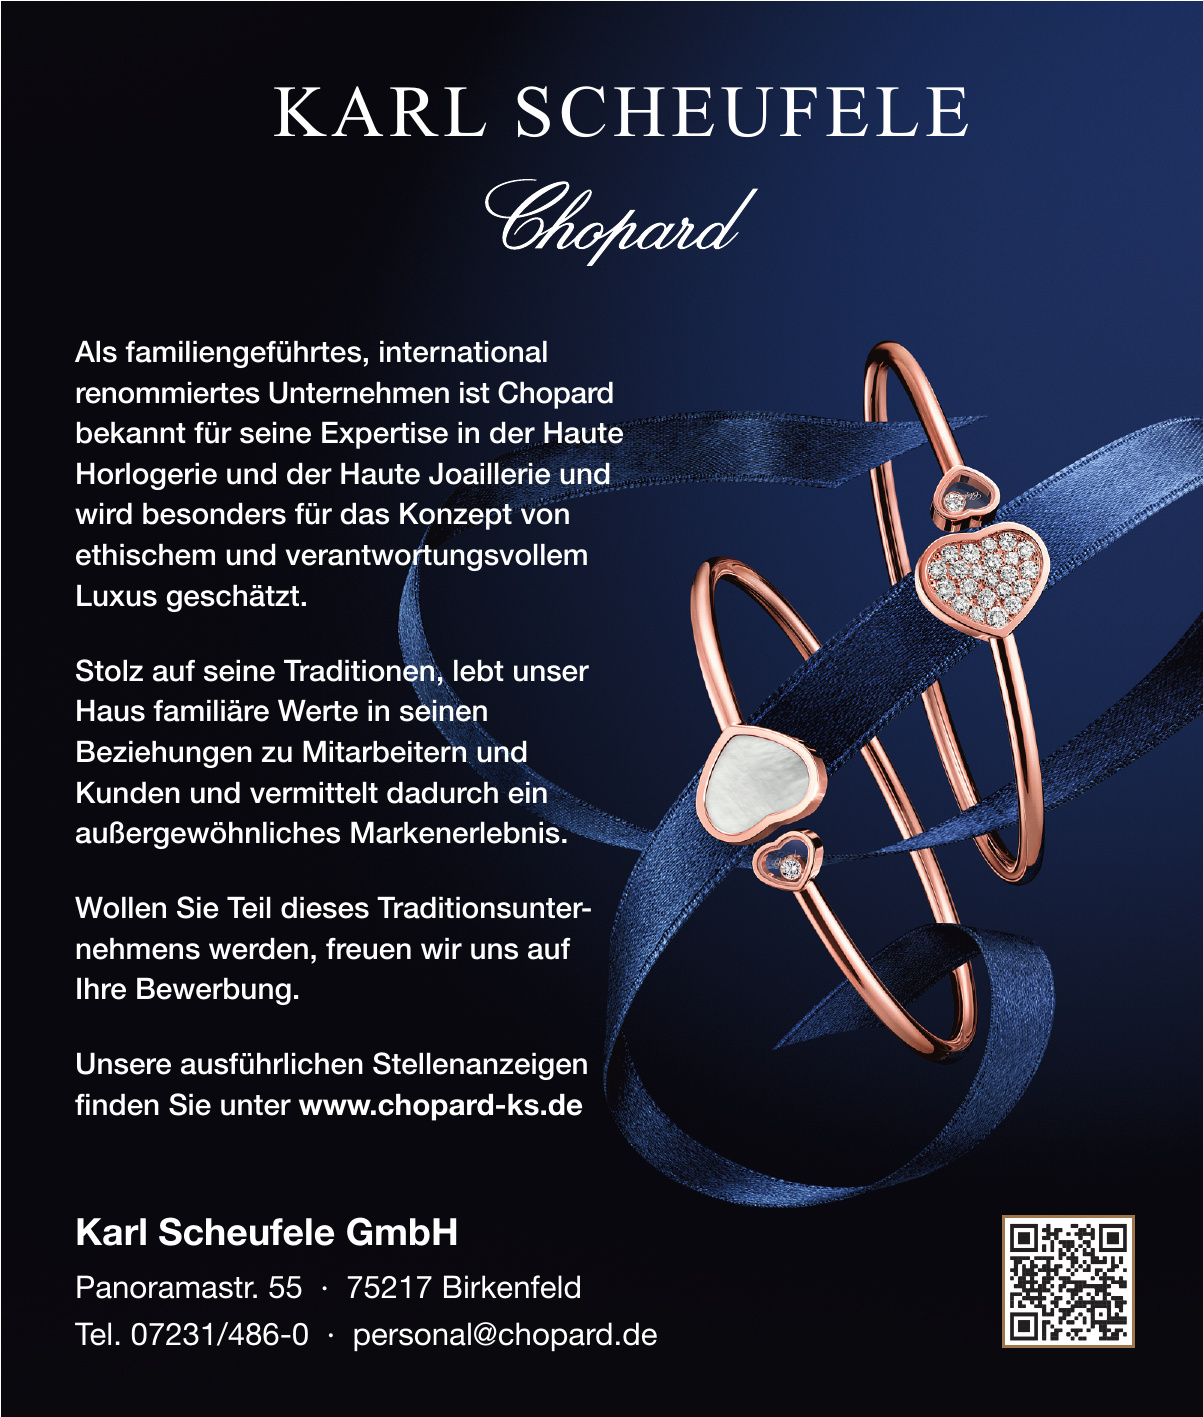 Karl Scheufele GmbH